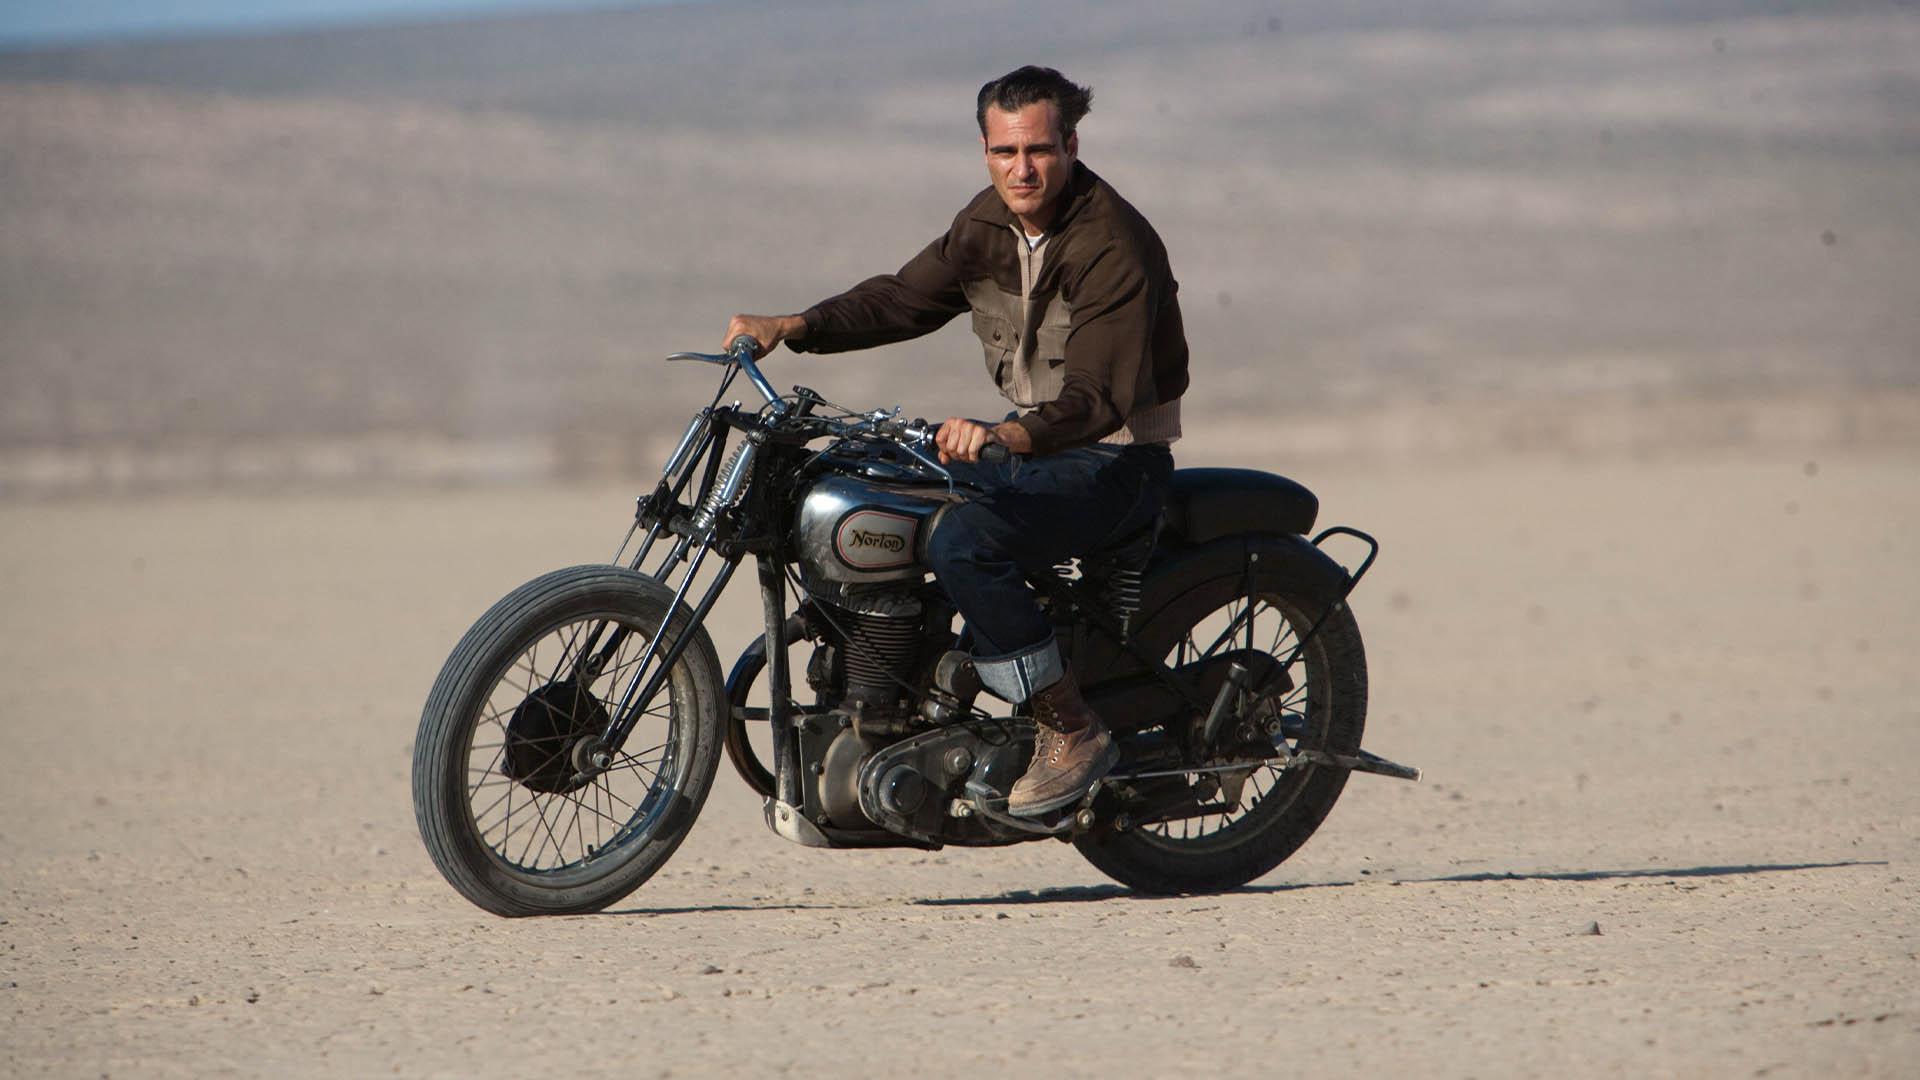 شخصیت فردی کوئل با بازی واکین فینیکس سوار بر یک موتور در فیلم The Master